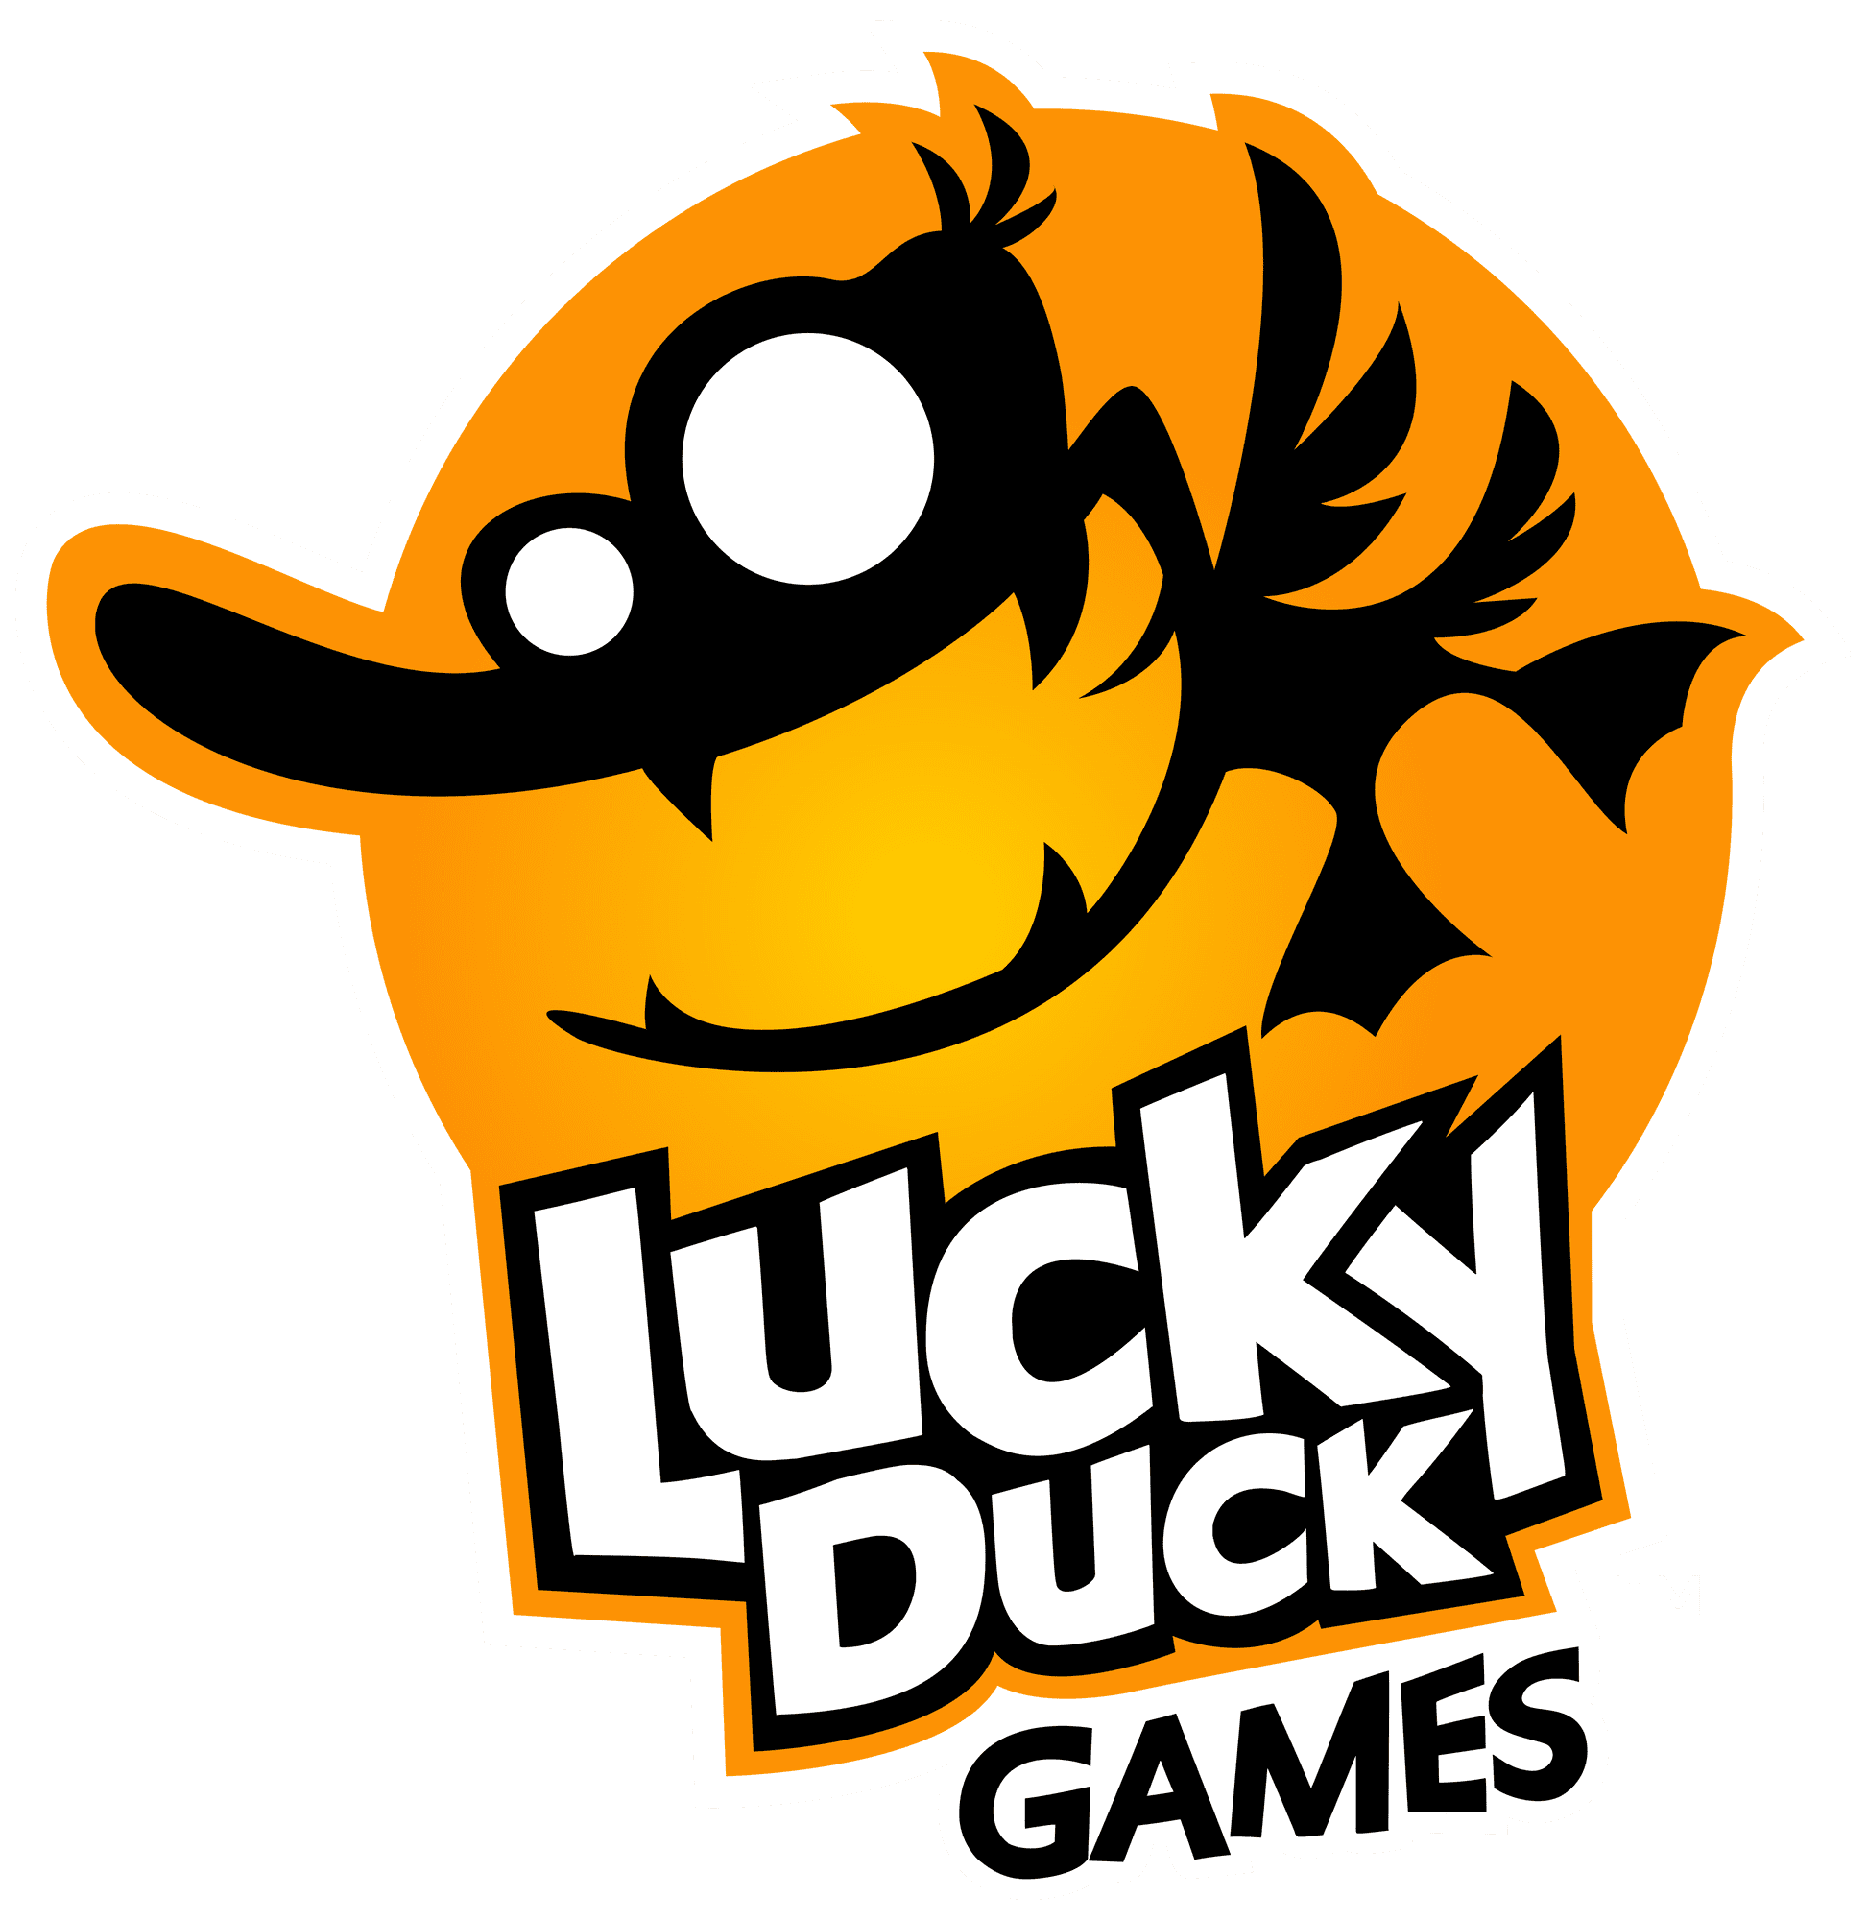 Brand: Lucky Duck Games